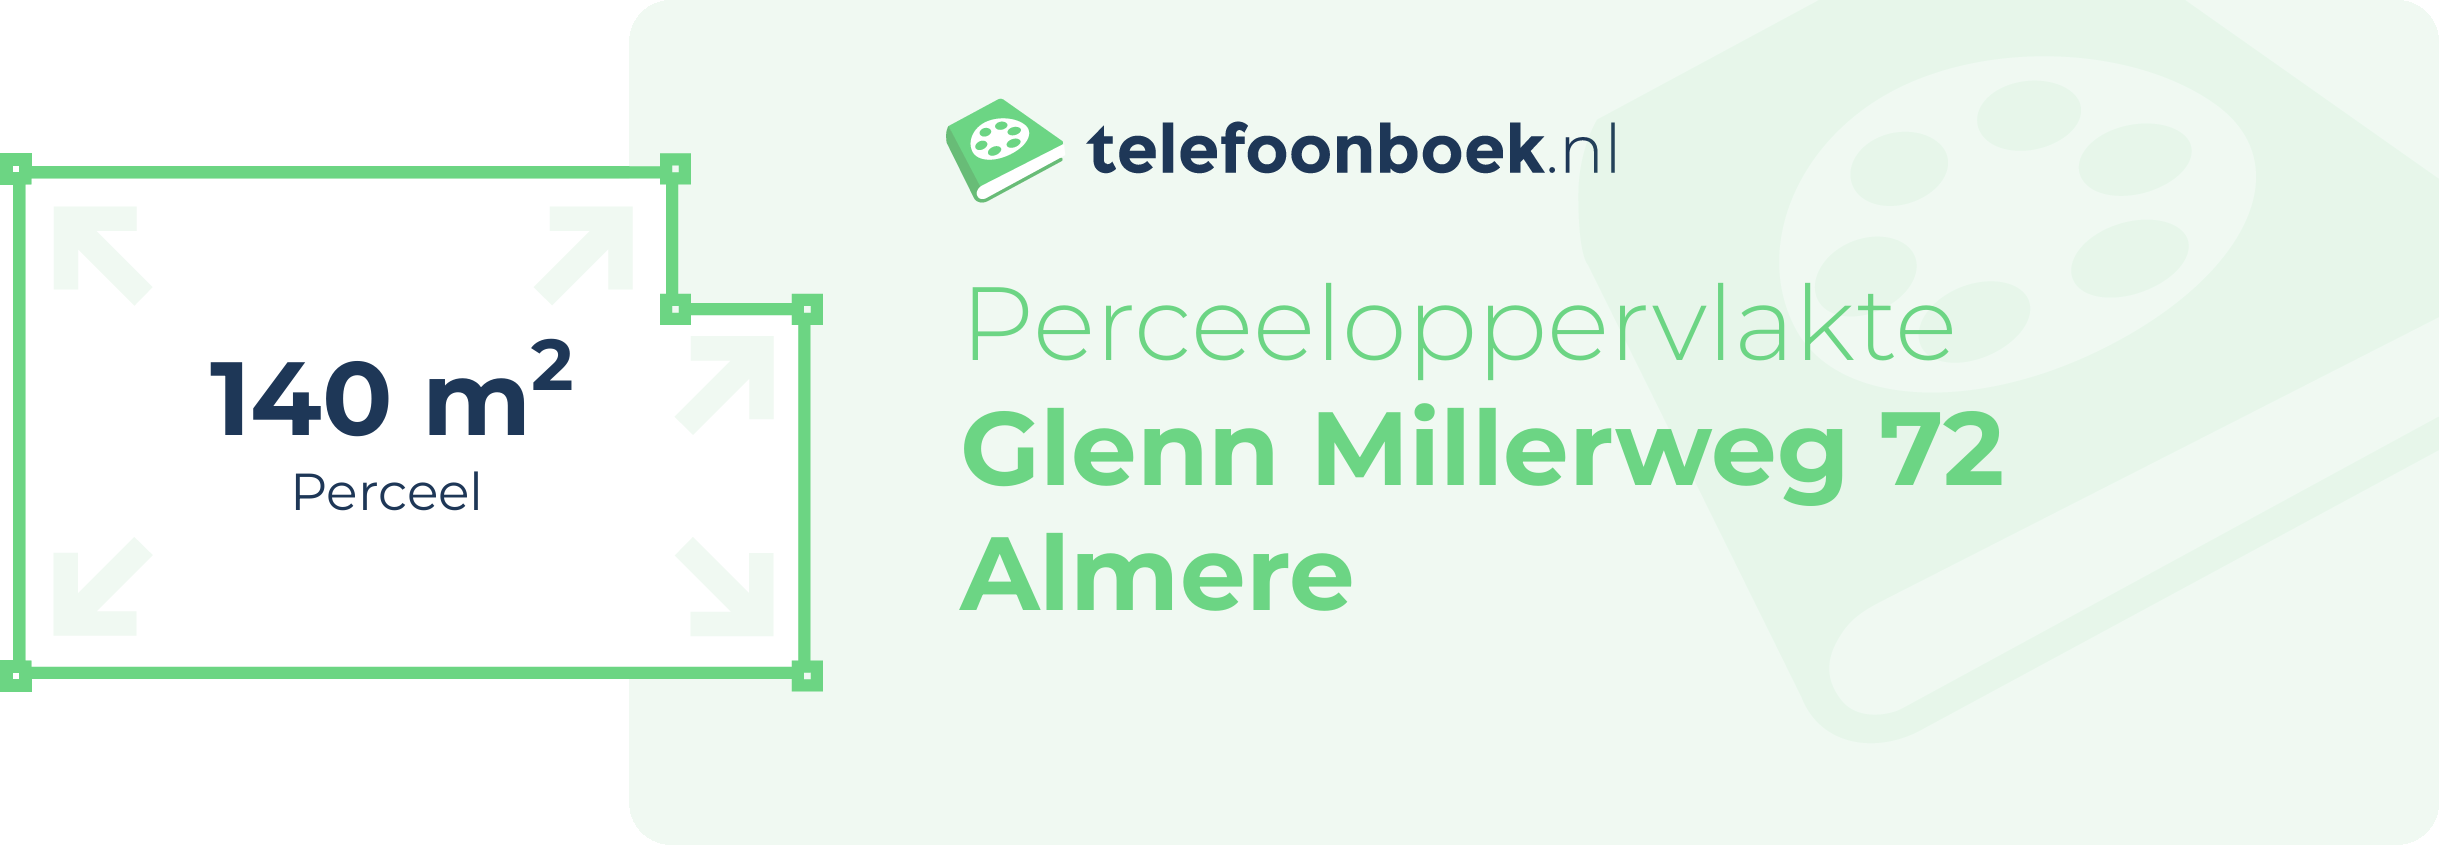 Perceeloppervlakte Glenn Millerweg 72 Almere